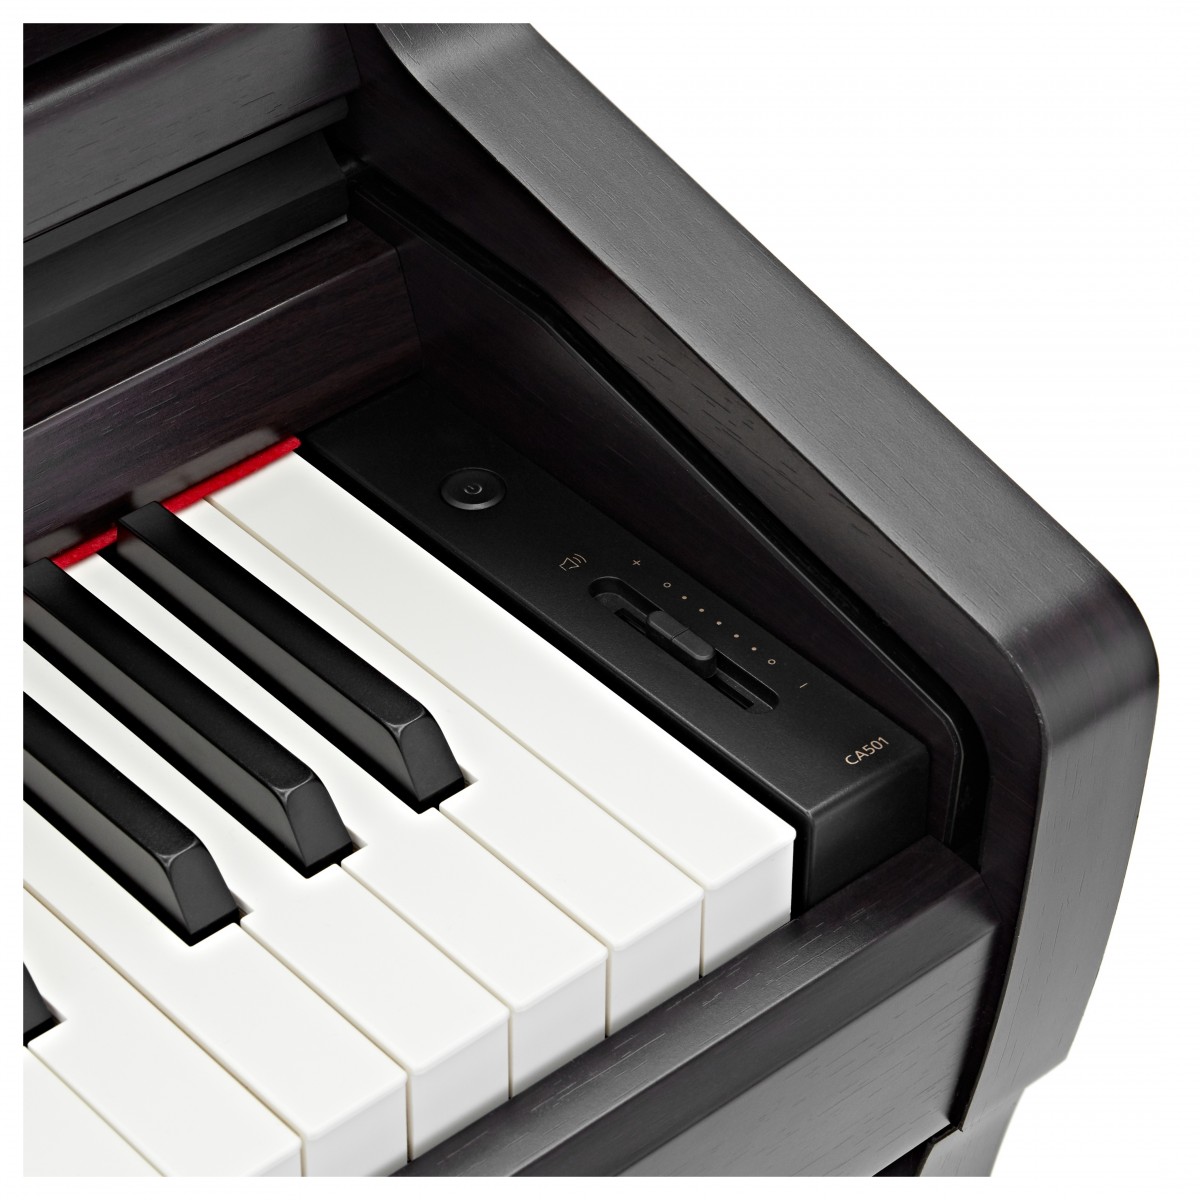 Цифровое пианино KAWAI CA501R